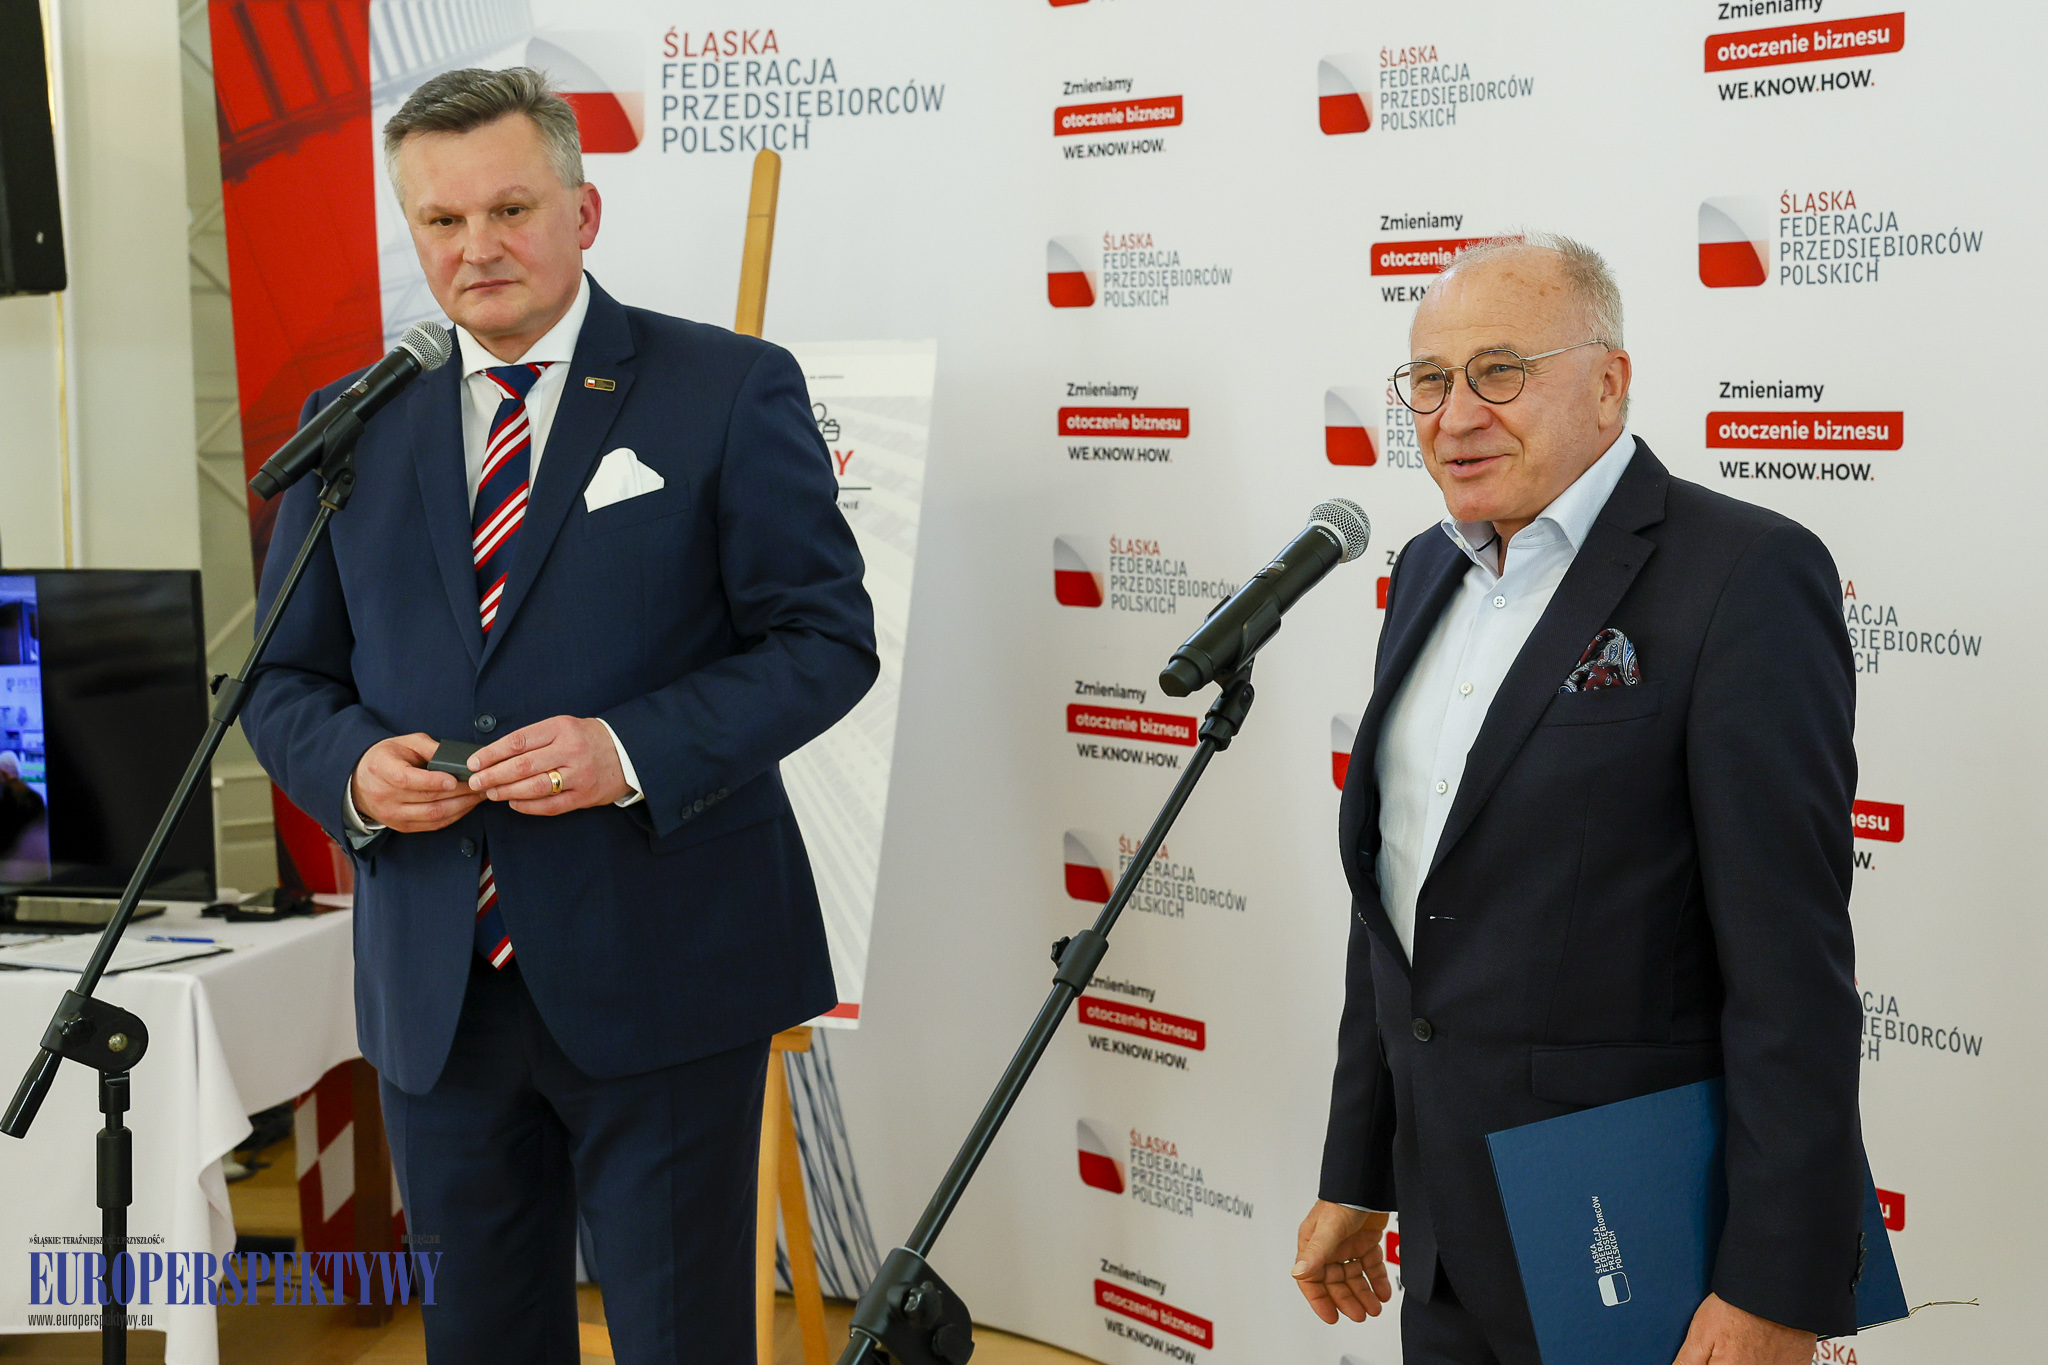 Europerspektywy Śląska Federacja Przedsiębiorców Polskich uruchomiona